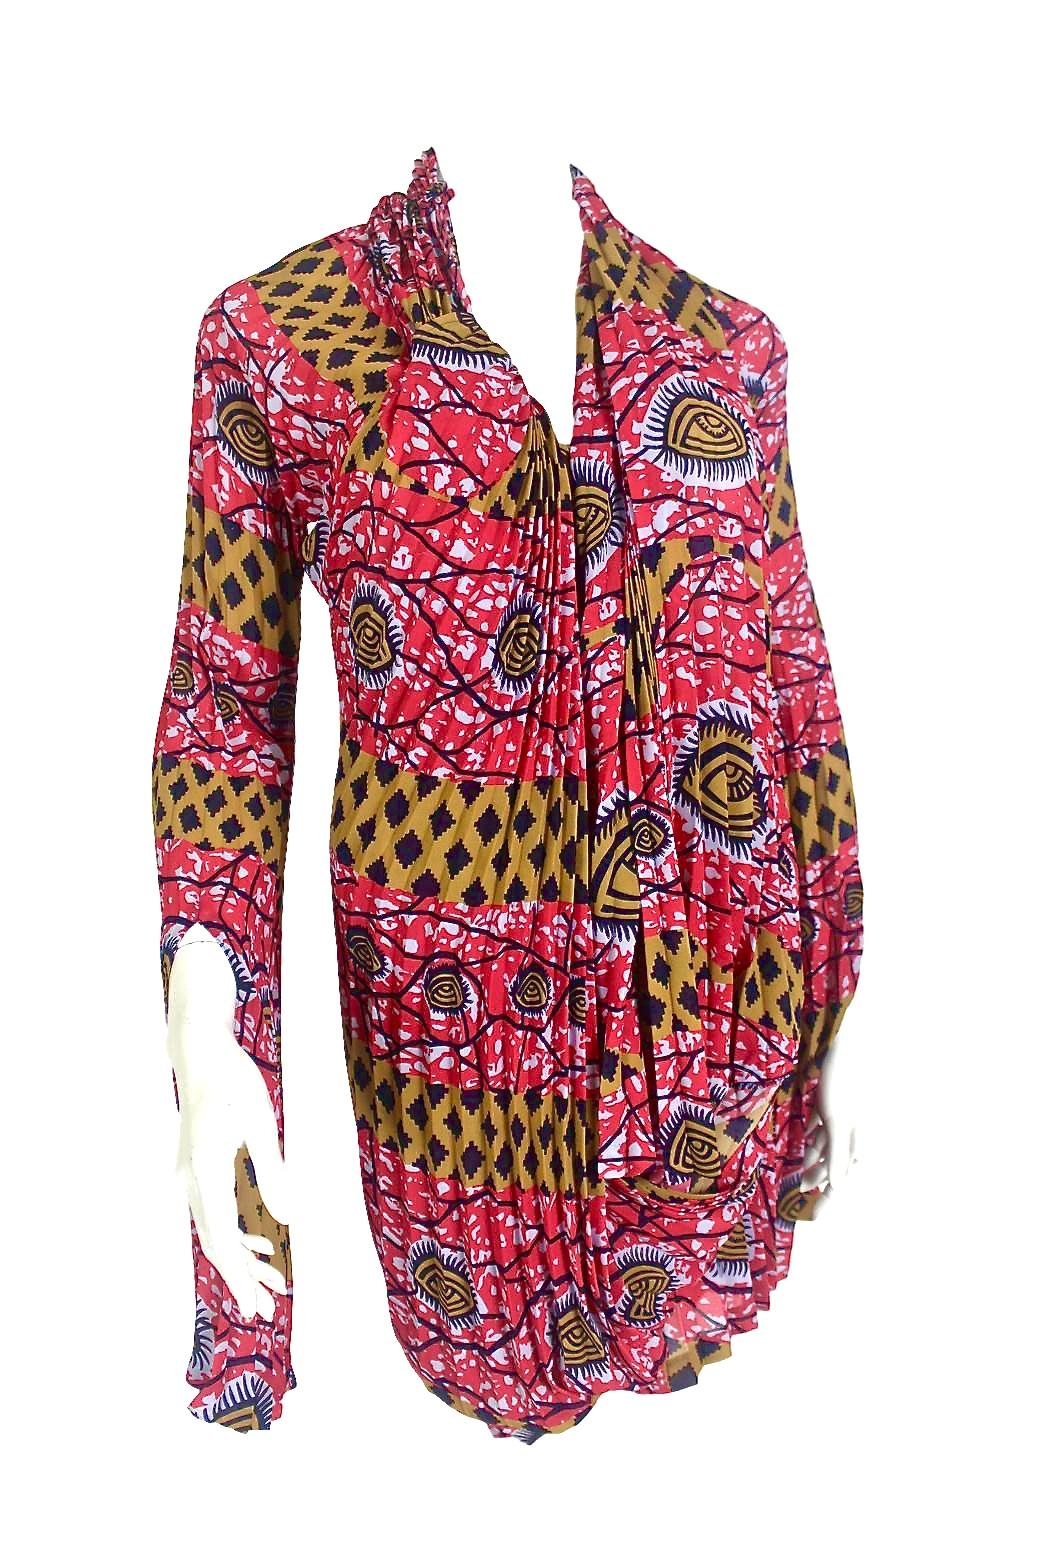 Comme des Garçons Junya Watanabe African Open Back Print Dress AD 2009 For Sale 5